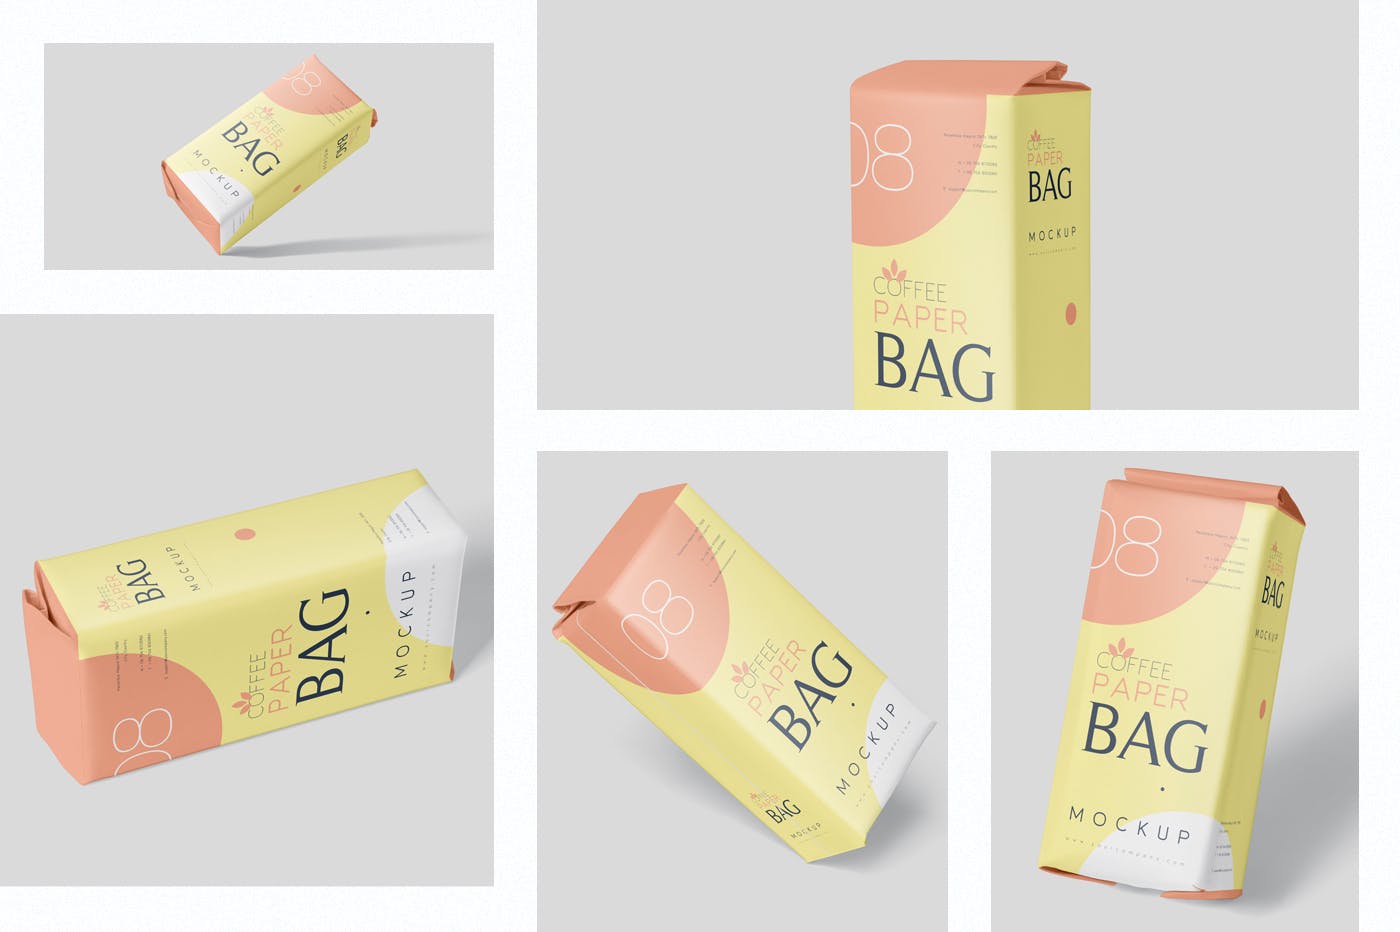 咖啡粉/咖啡豆纸袋包装素材库精选模板 Coffee Paper Bag Mockup Set插图(1)